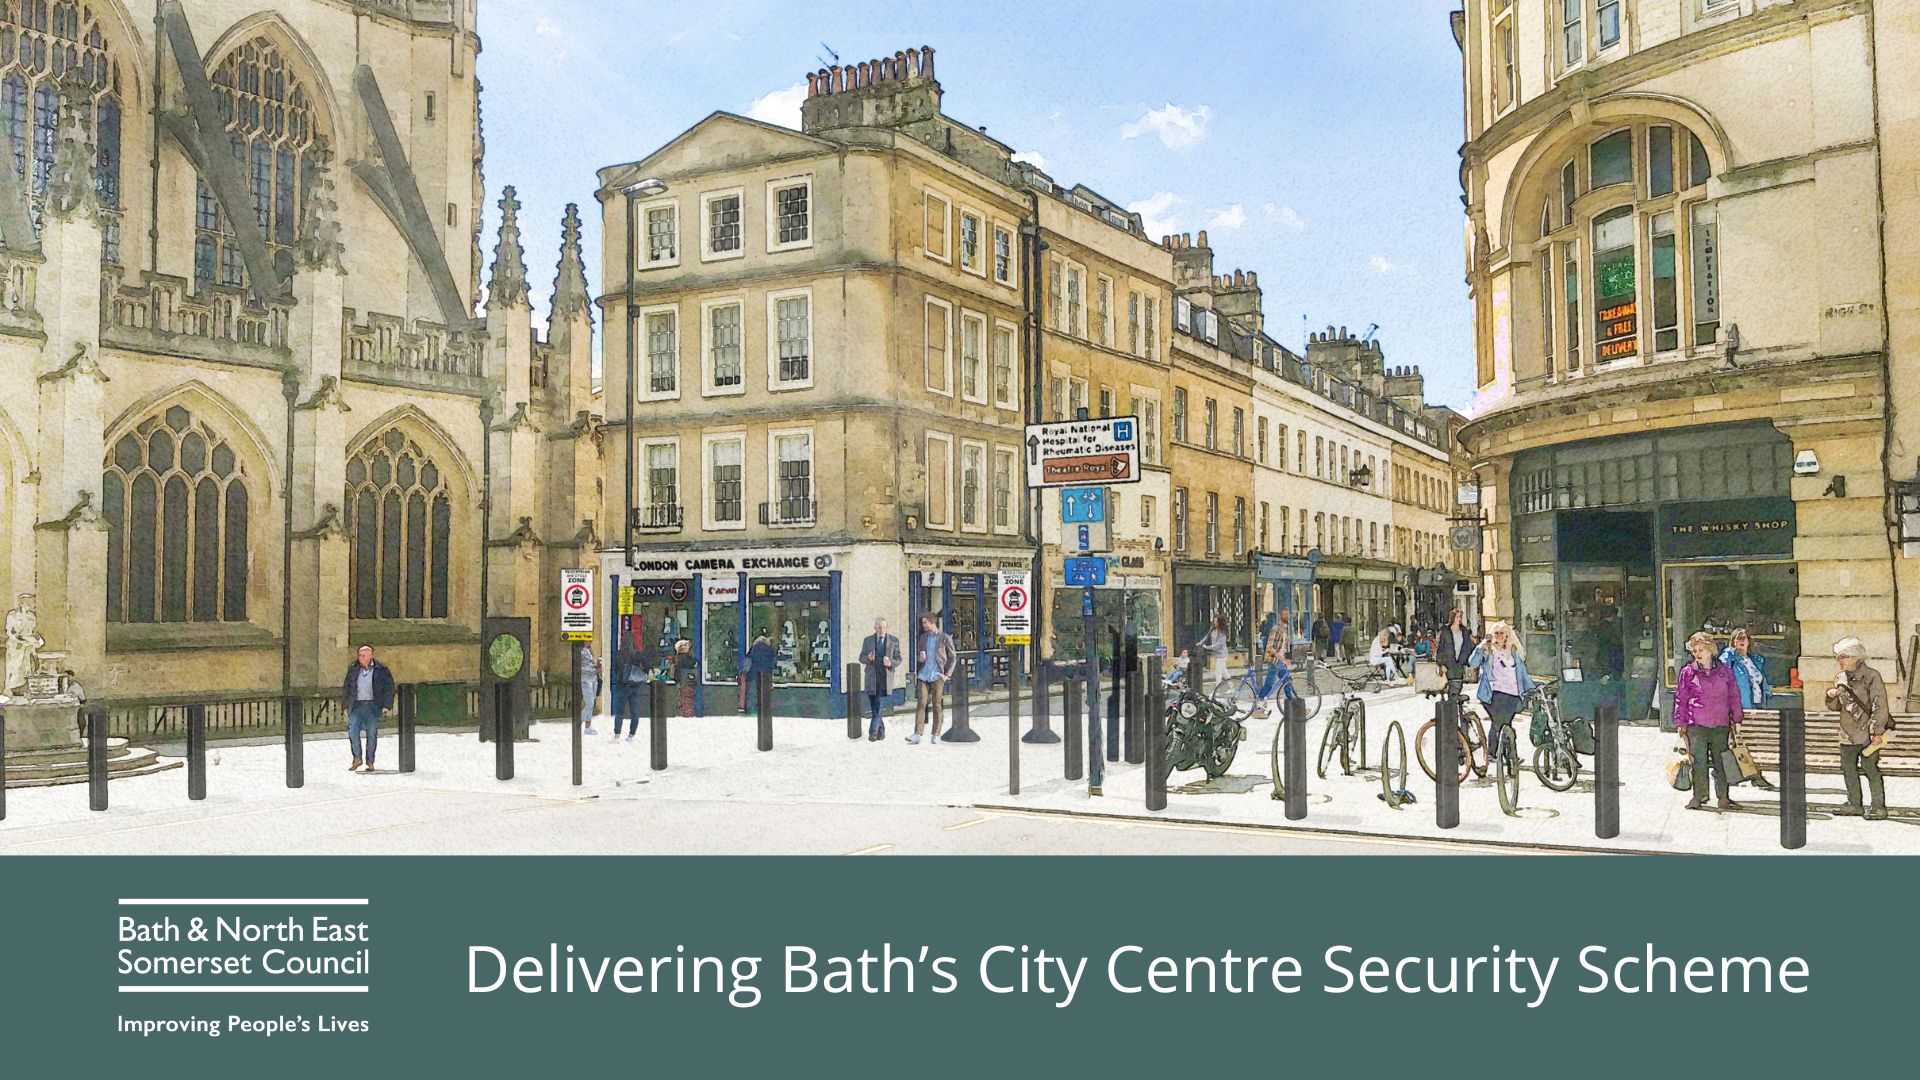 Bath road closure for City Centre Security scheme